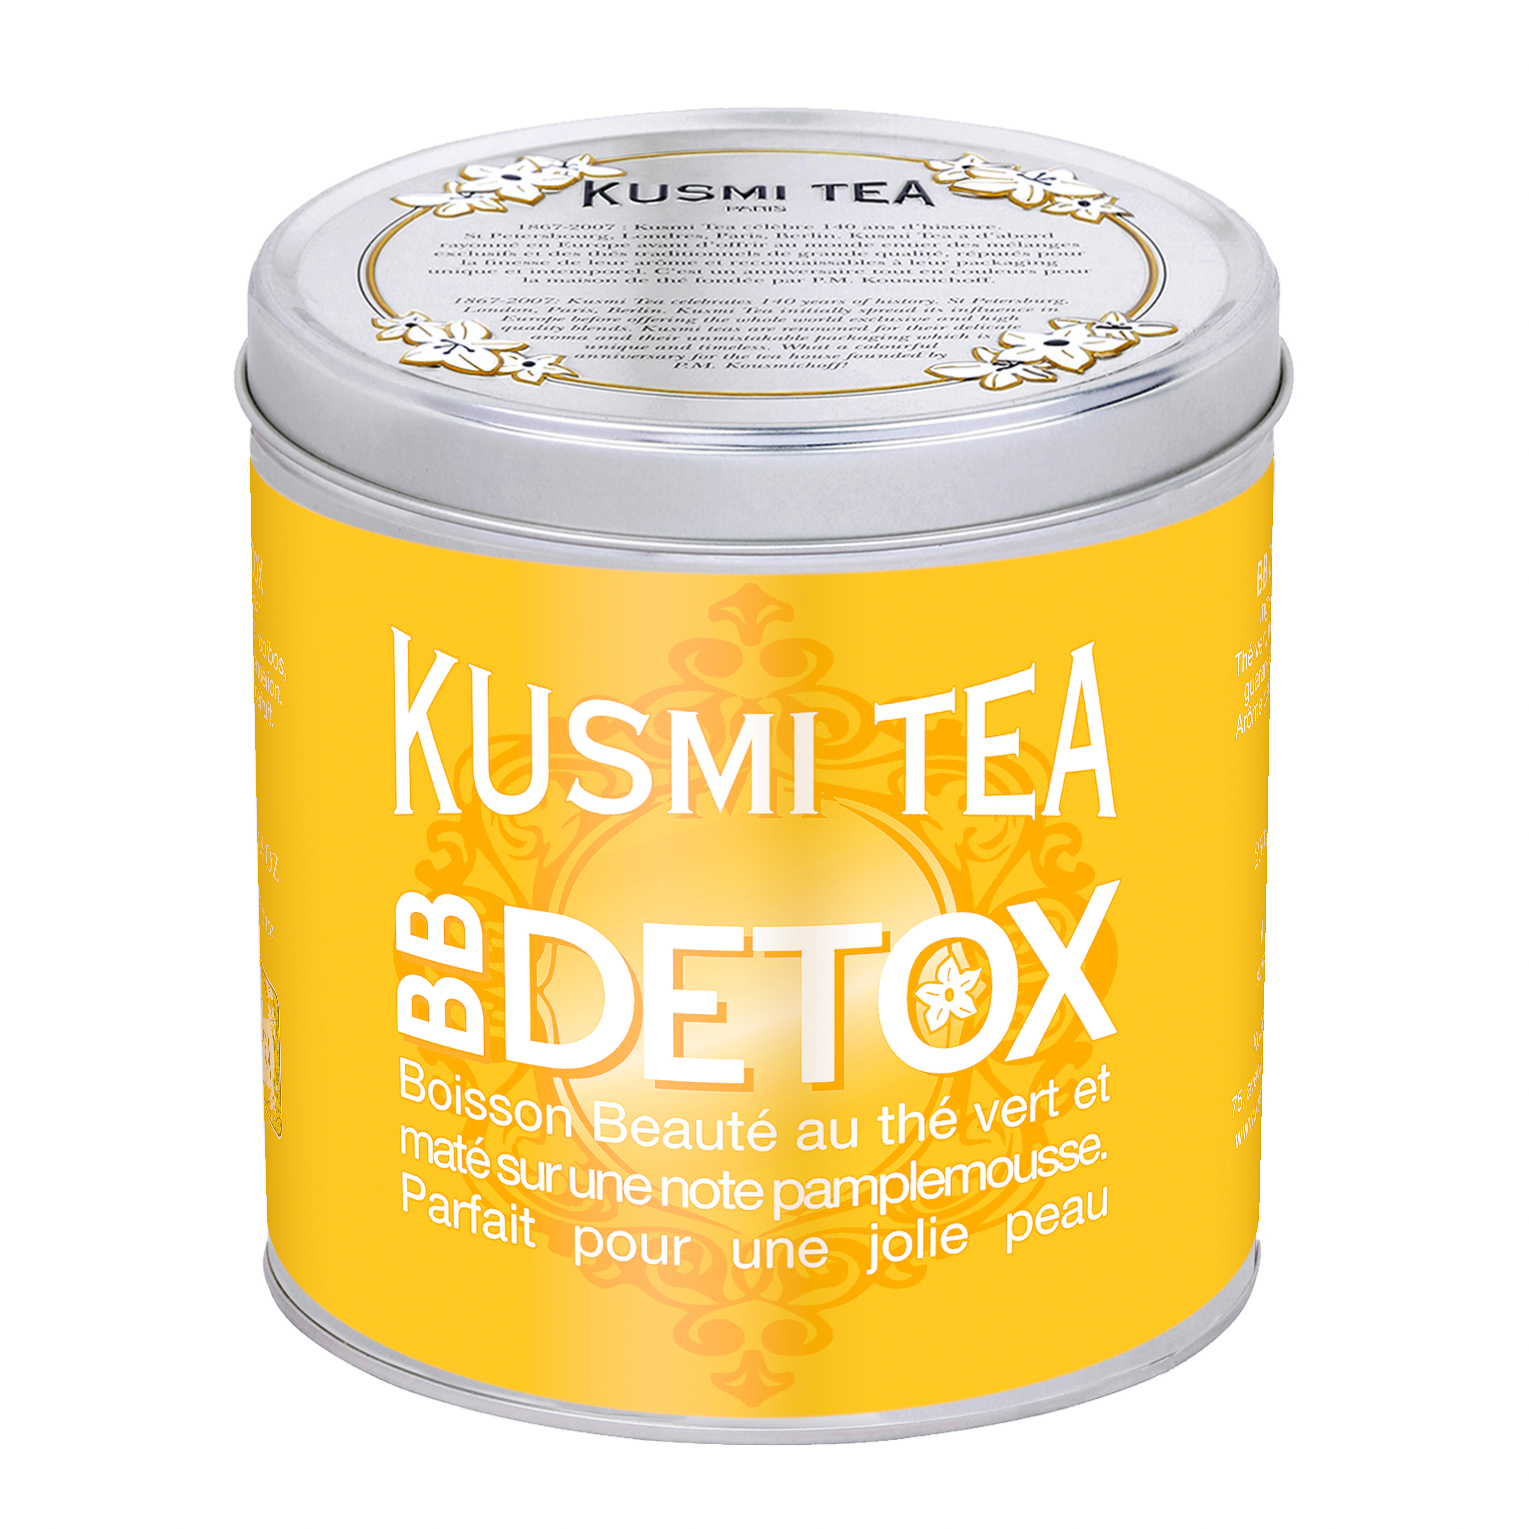 BB Detox Kusmi Tea